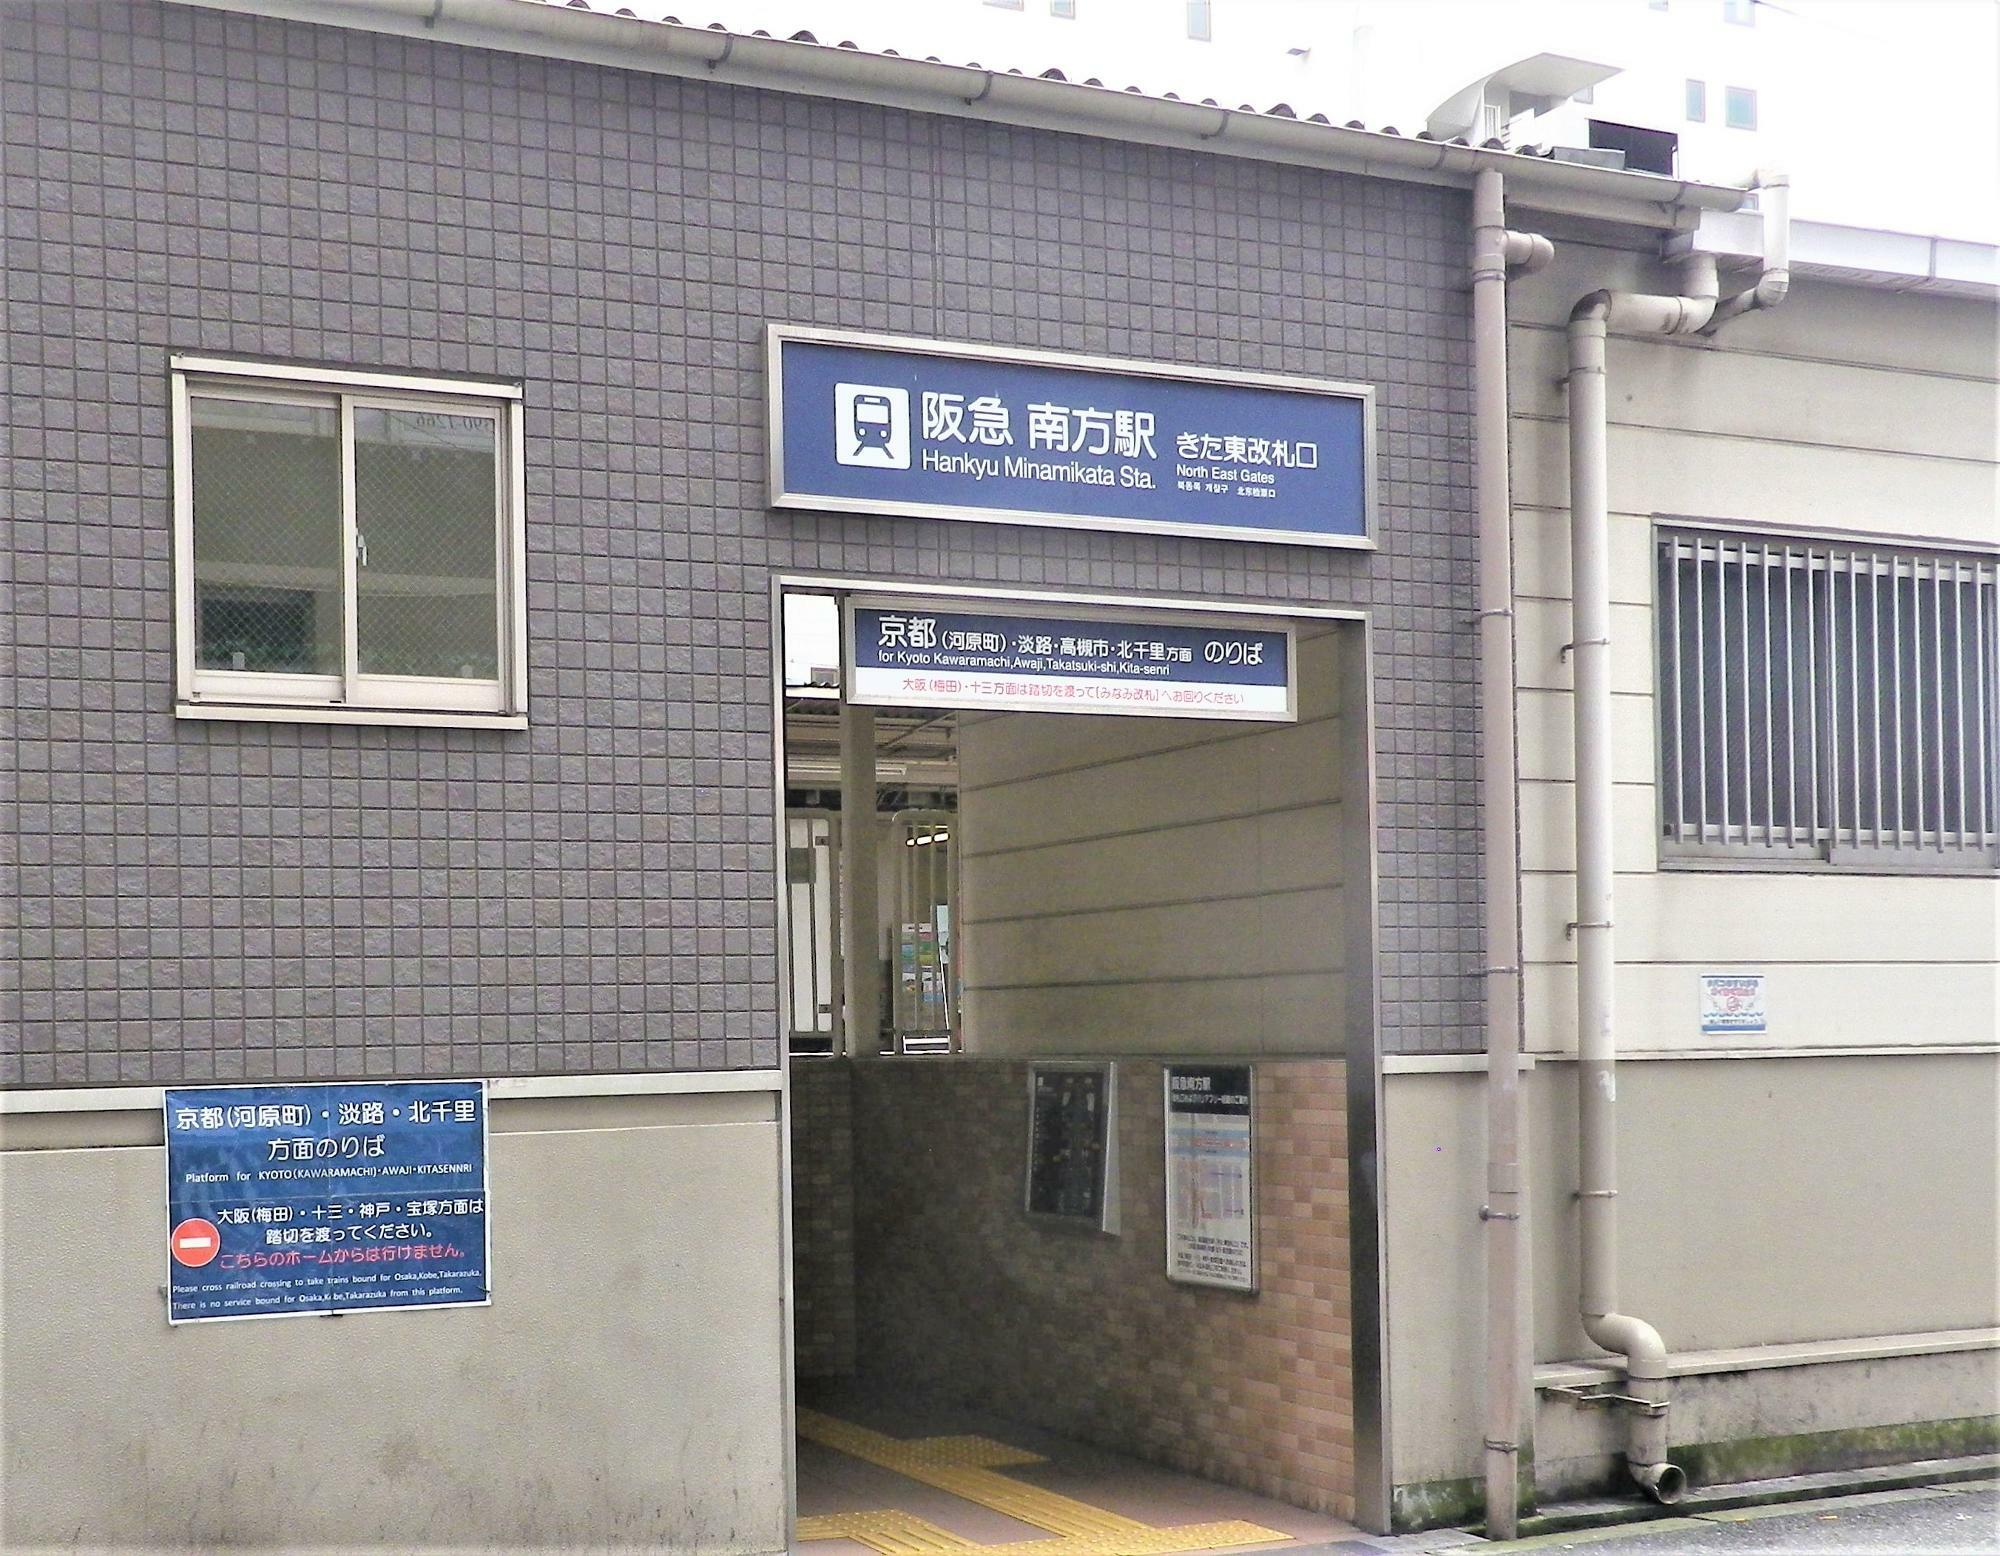 阪急電車の南方駅きた東改札口。